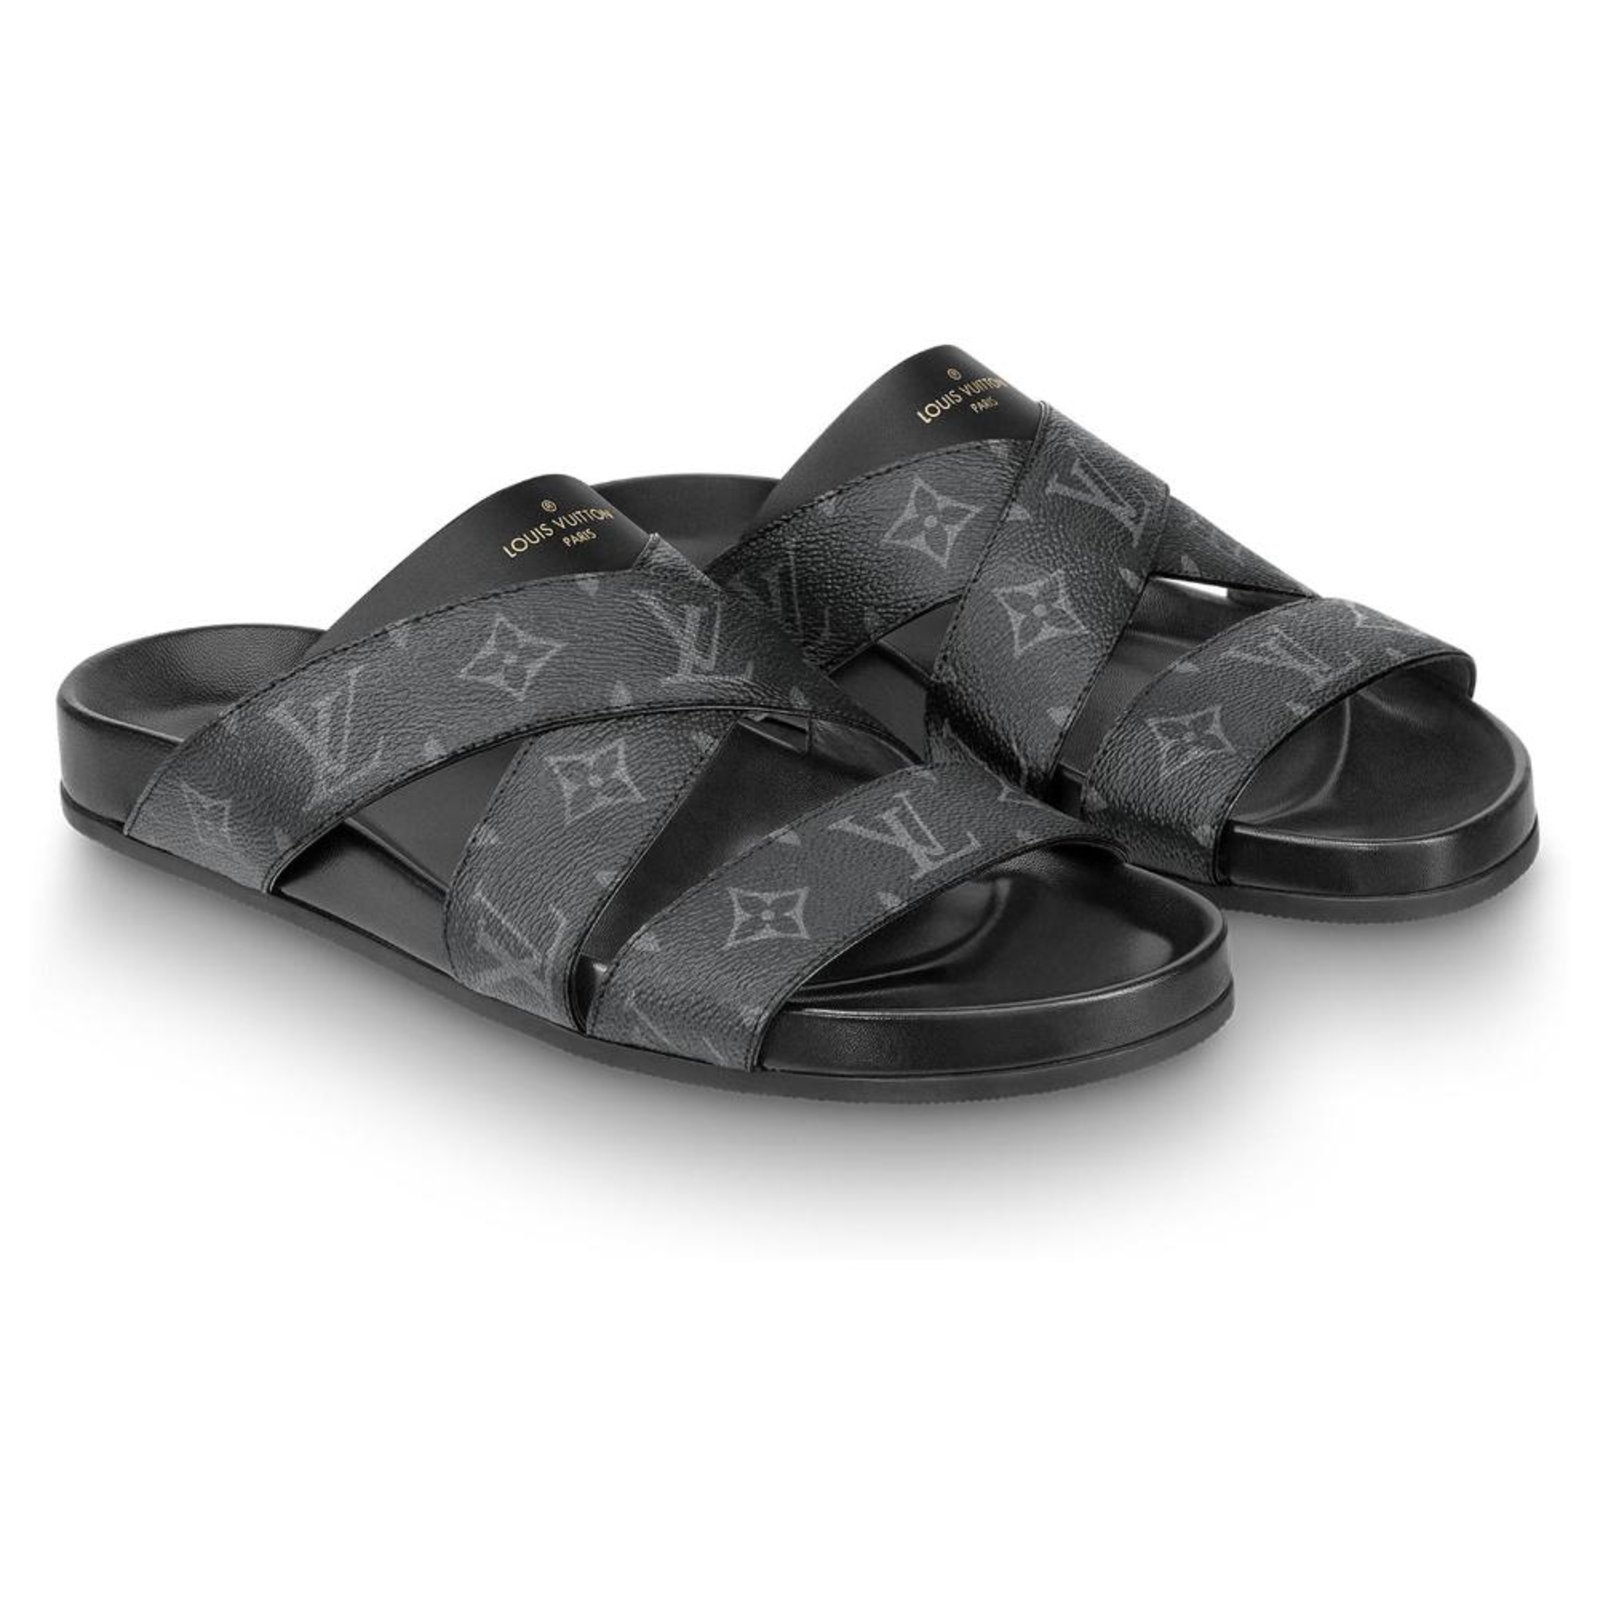 Men Louis Vuitton Shoes  Mens leather sandals, Louis vuitton